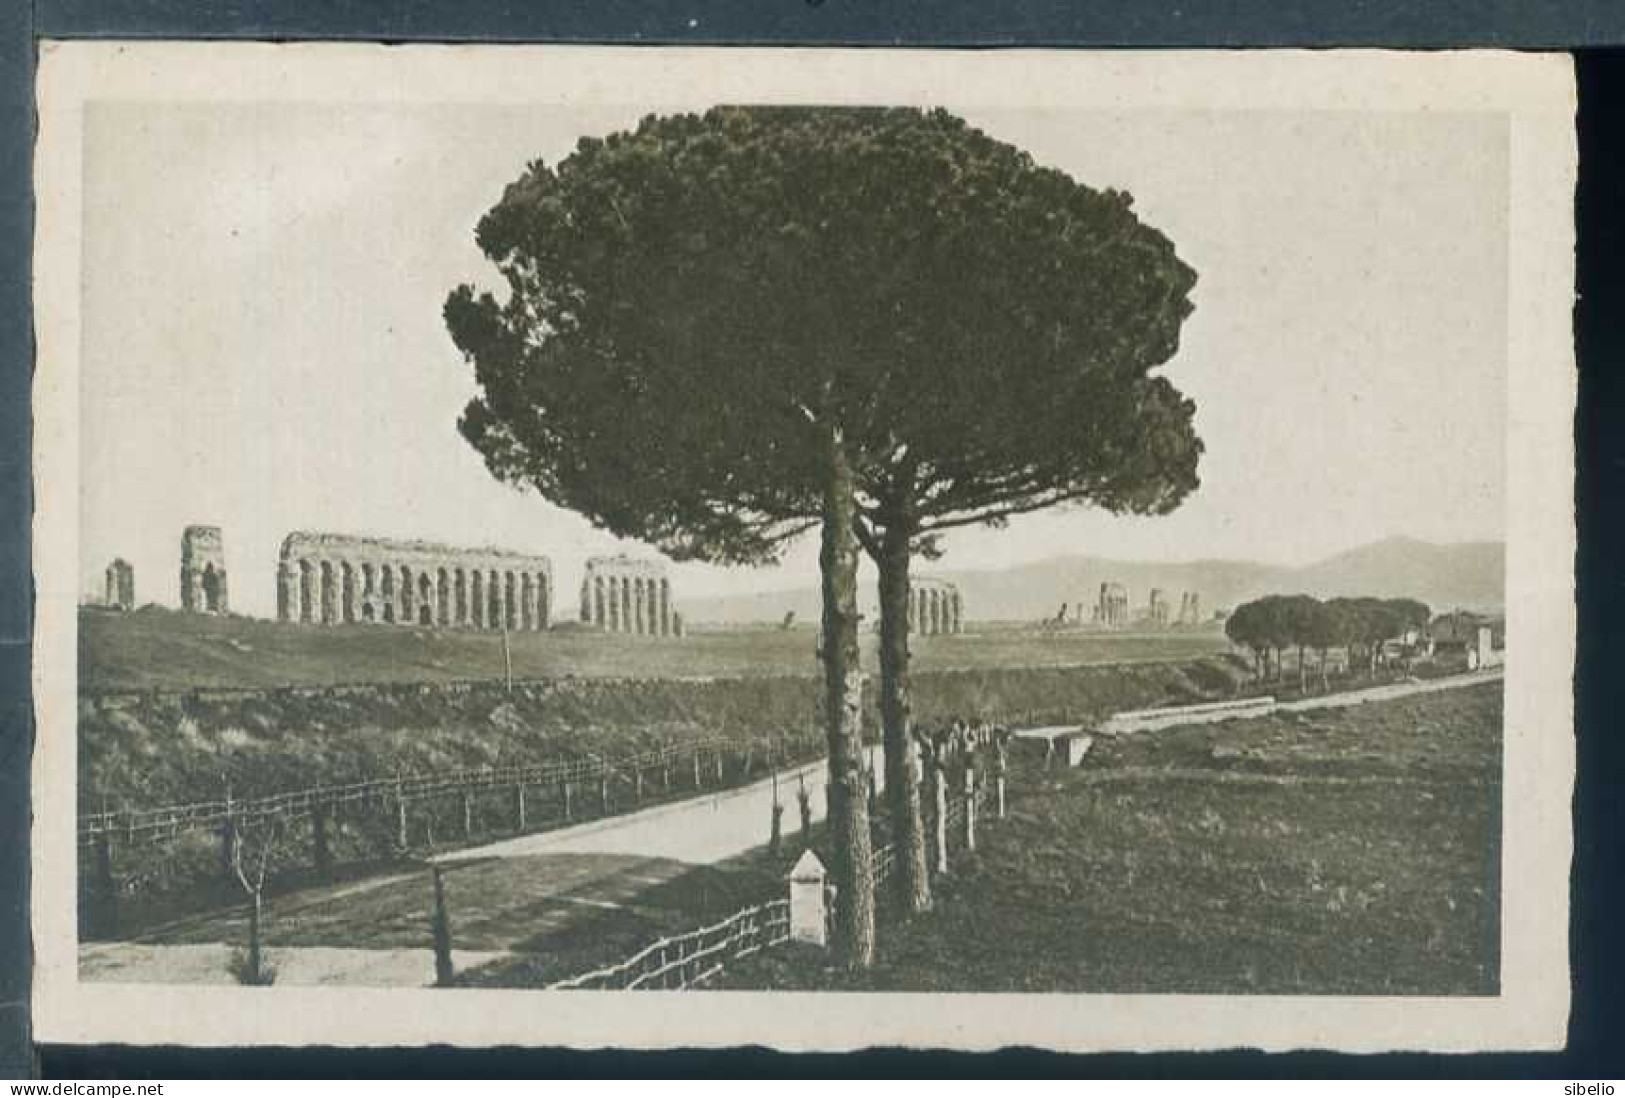 Roma - dieci cartoline antiche - rif. 1